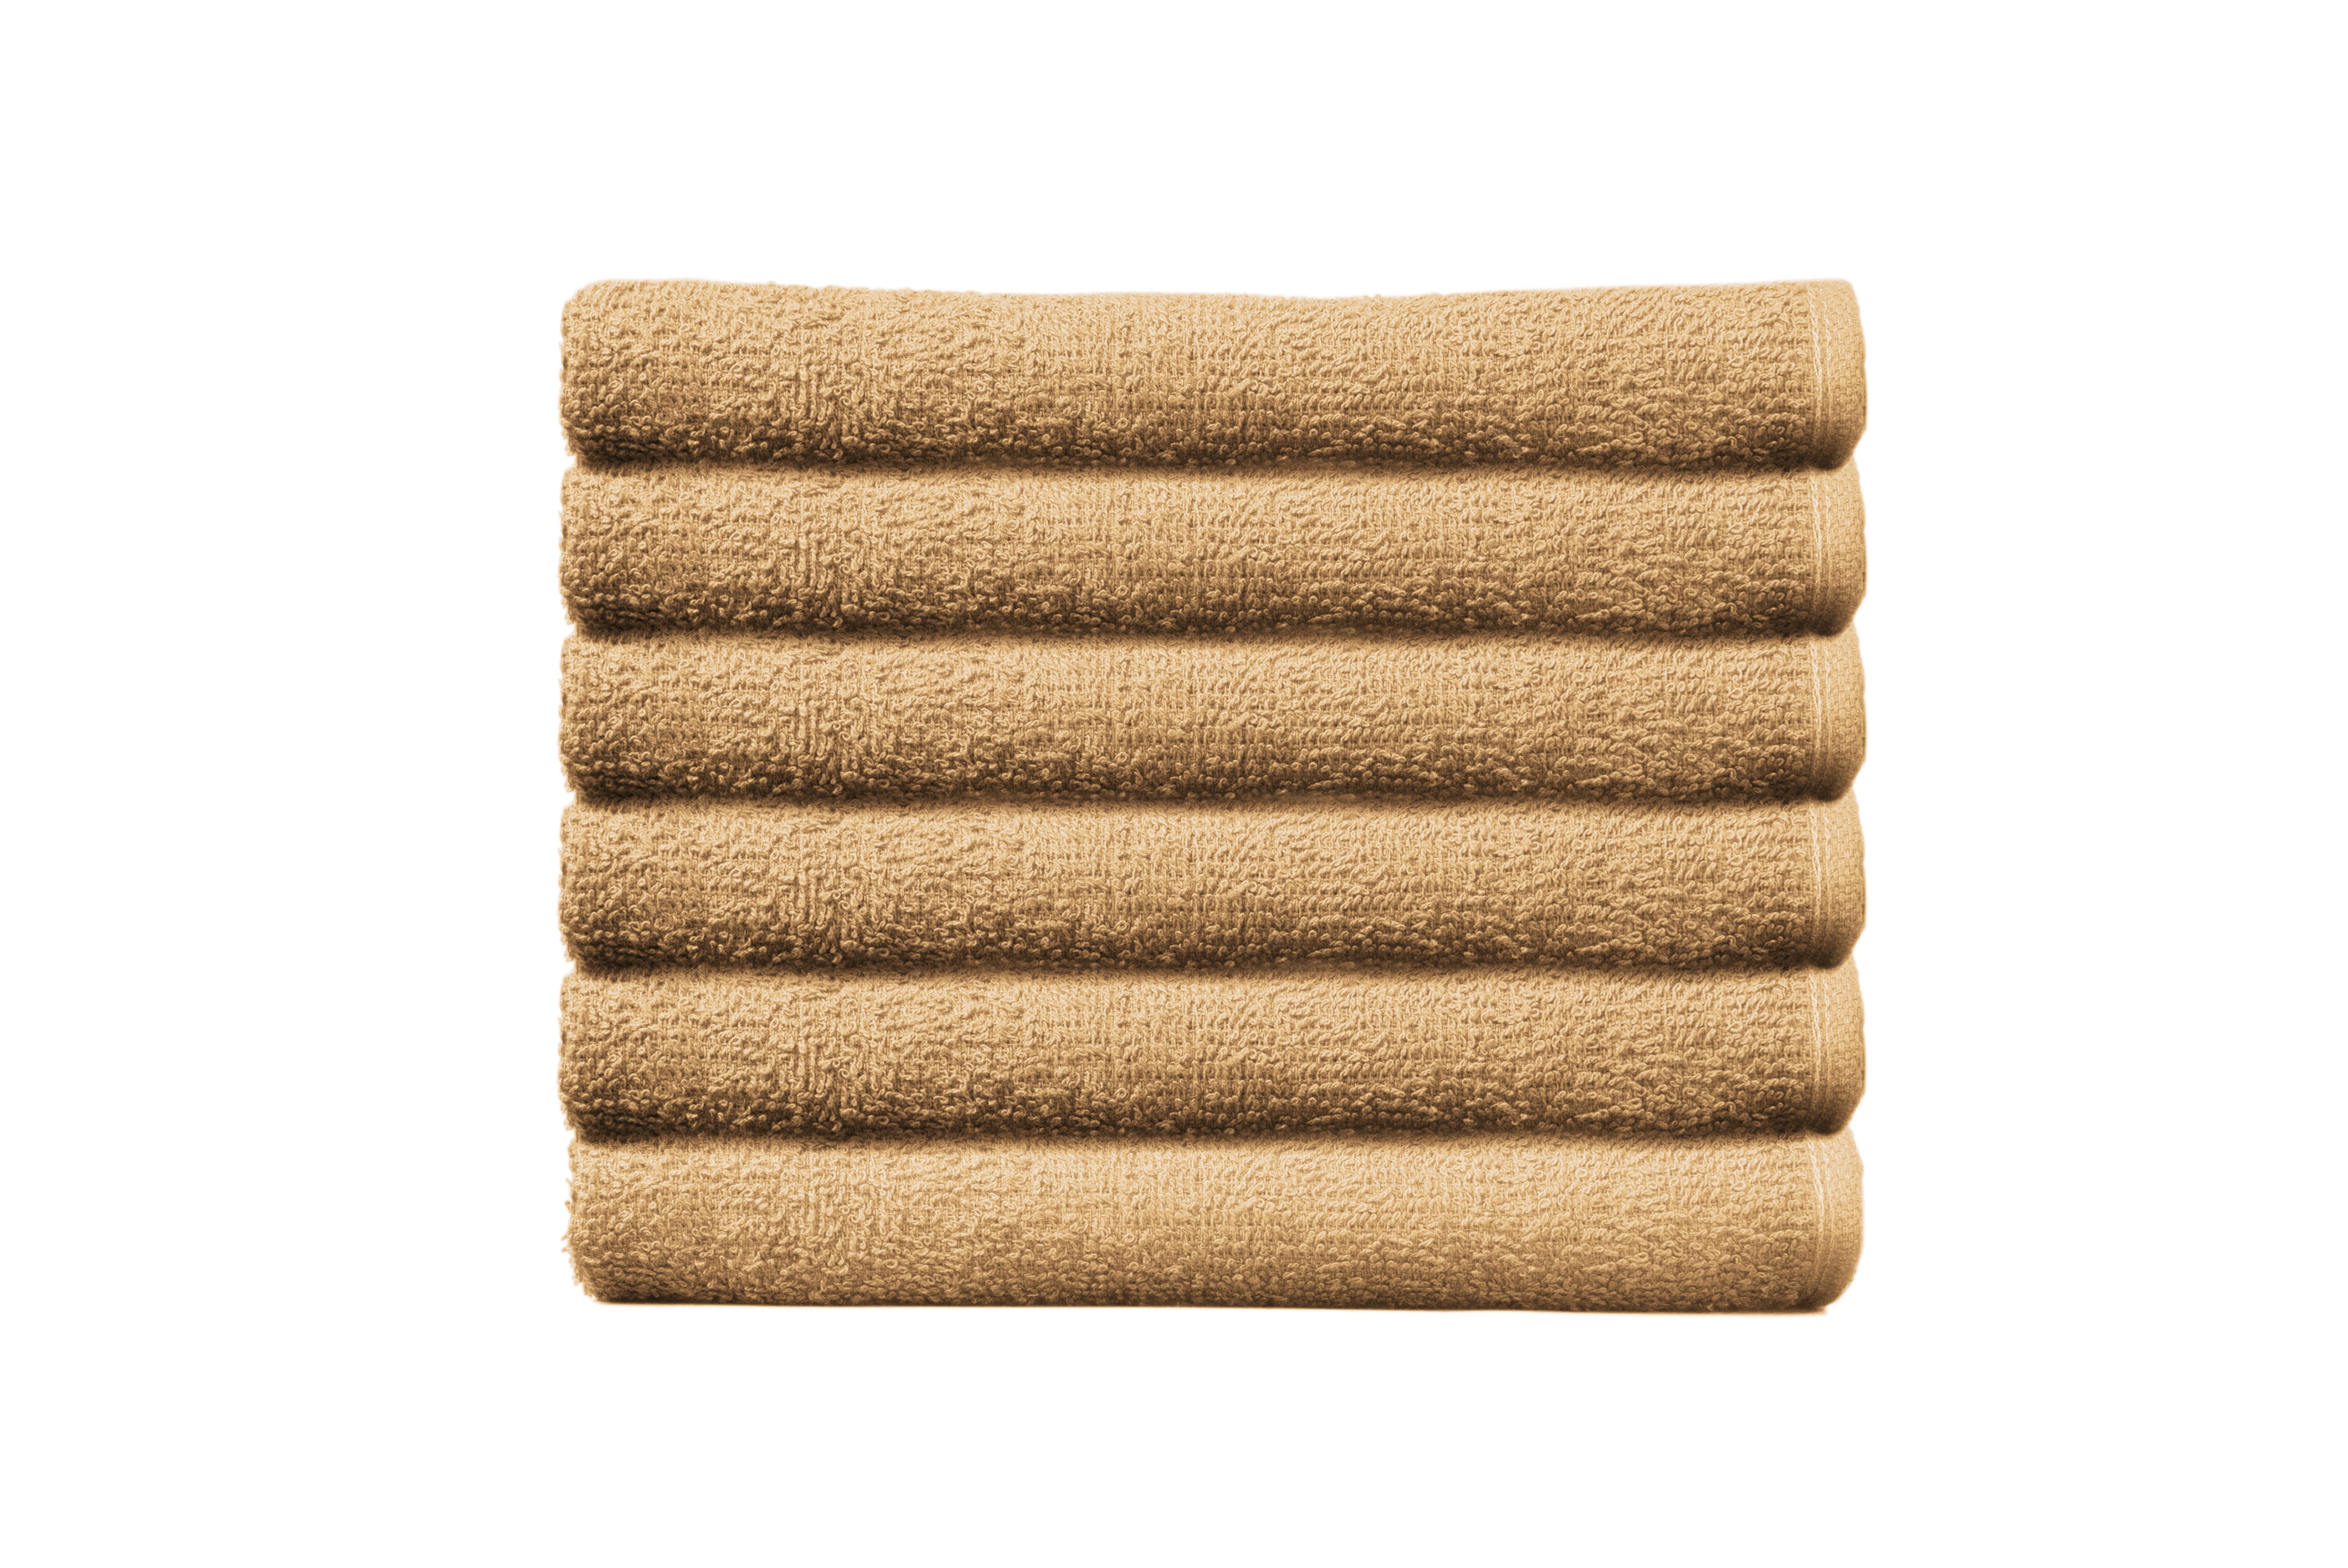 Partex Edge™ Towels